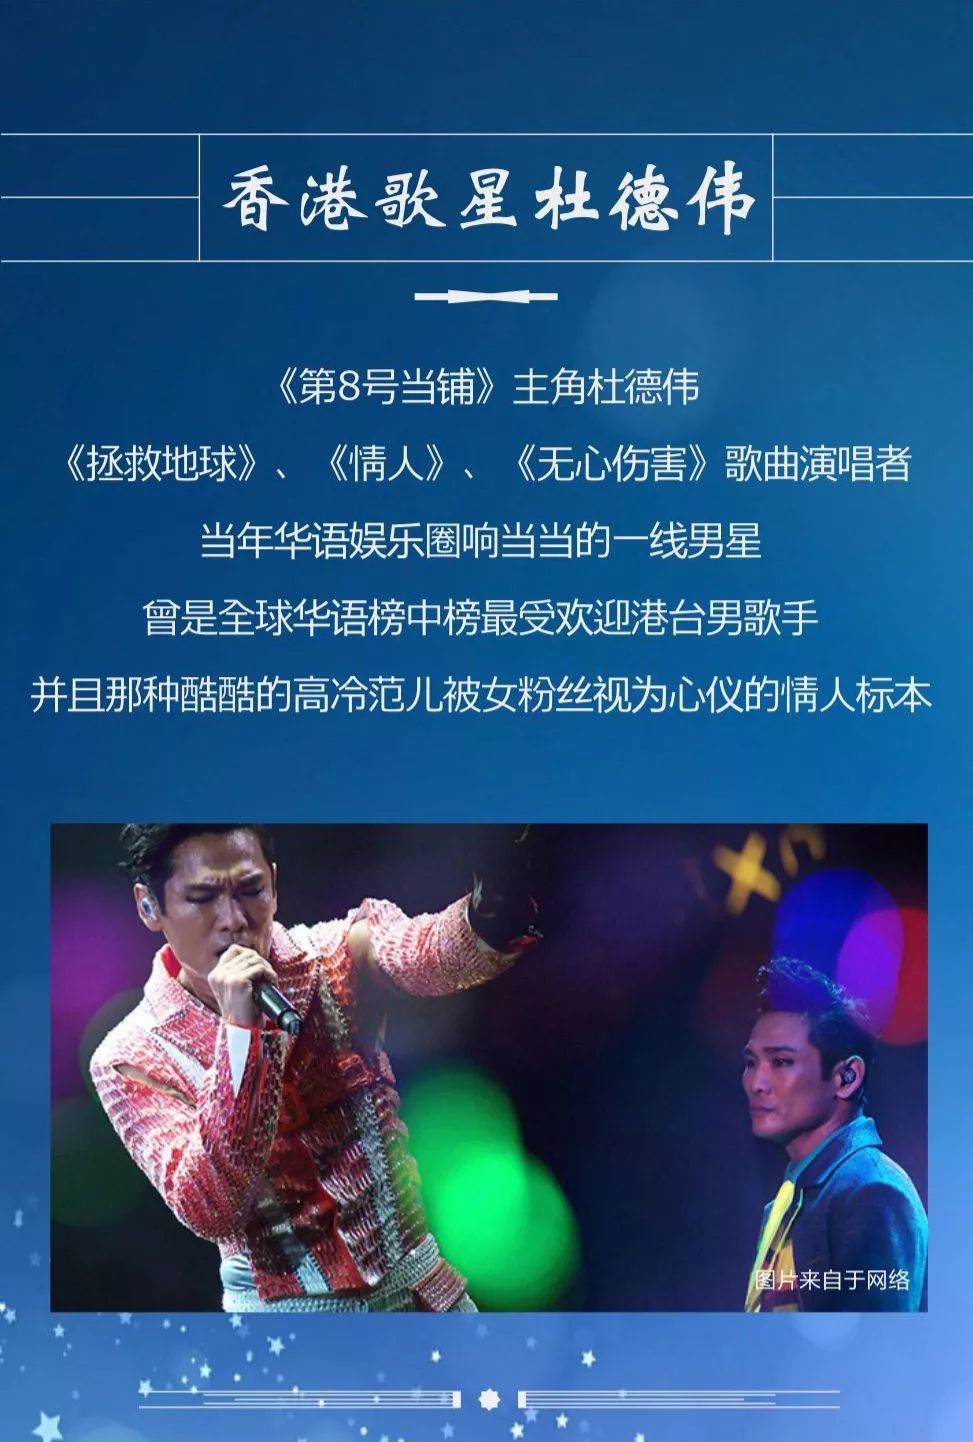 6月30日 香港歌星杜德伟联合两大明星唱响榆林